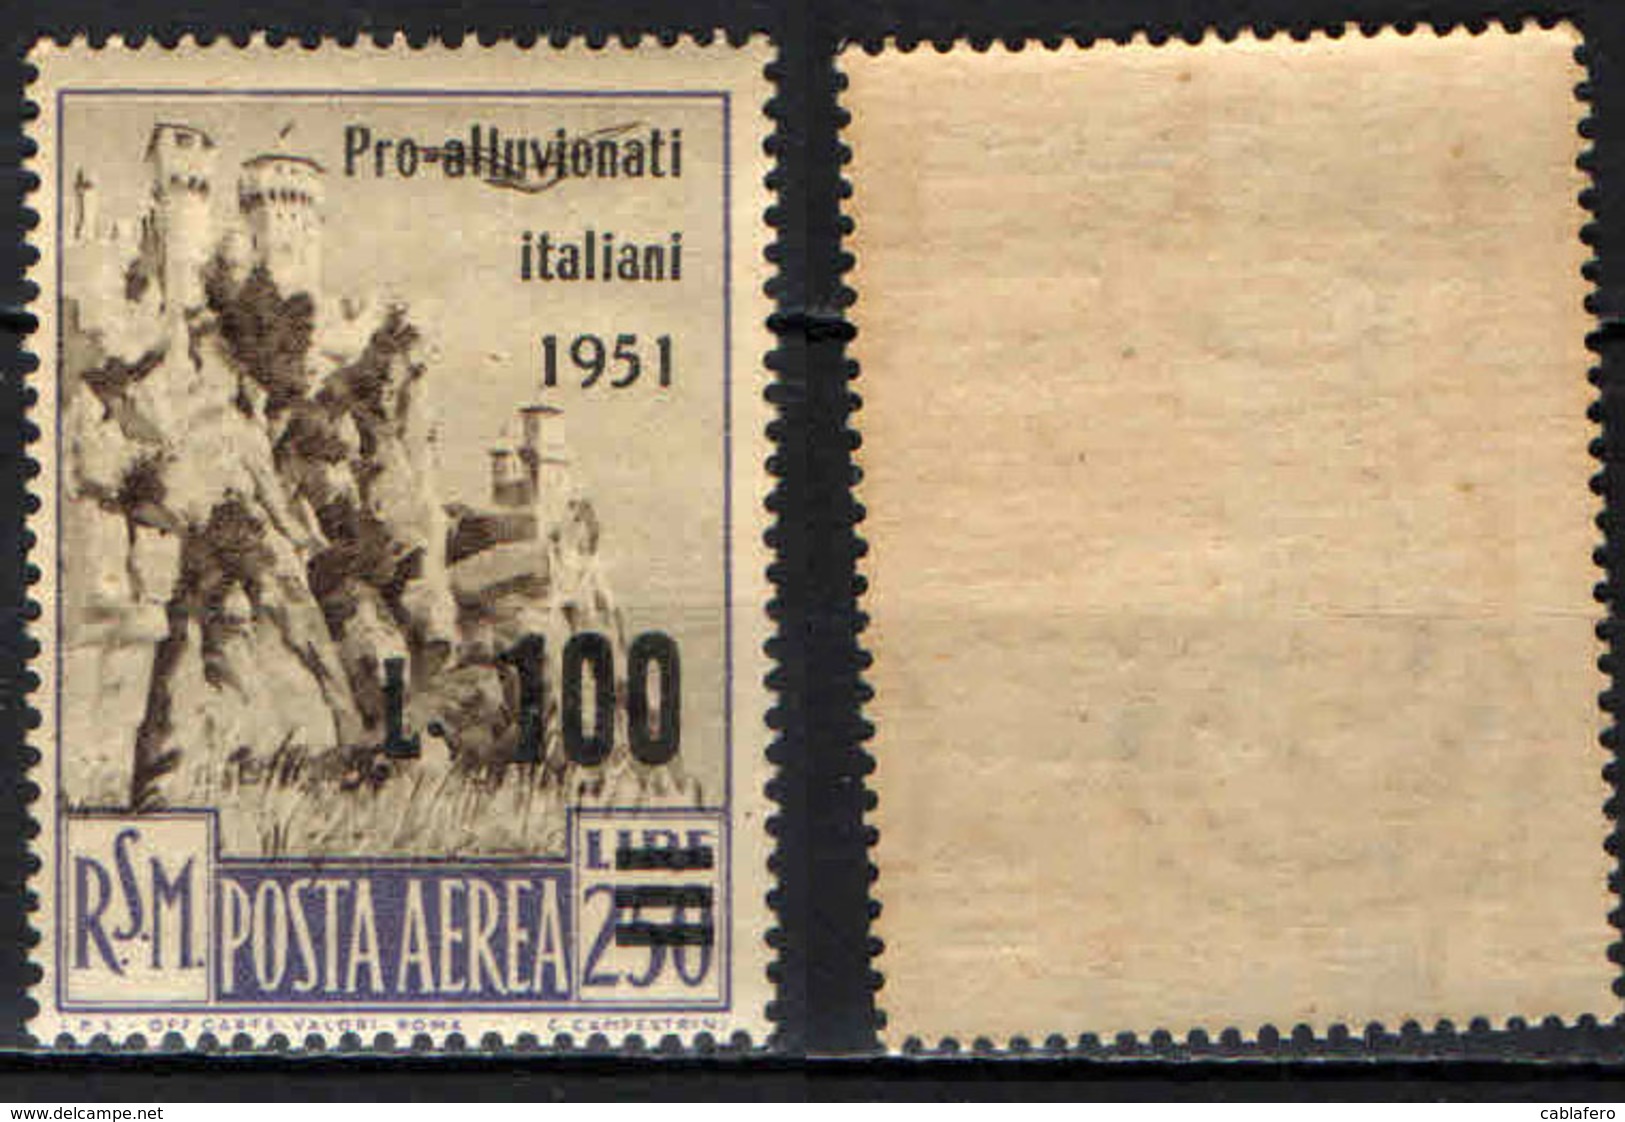 SAN MARINO - 1951 - PRO VITTIME DELL'ALLUVIONE IN ITALIA - MNH - Posta Aerea